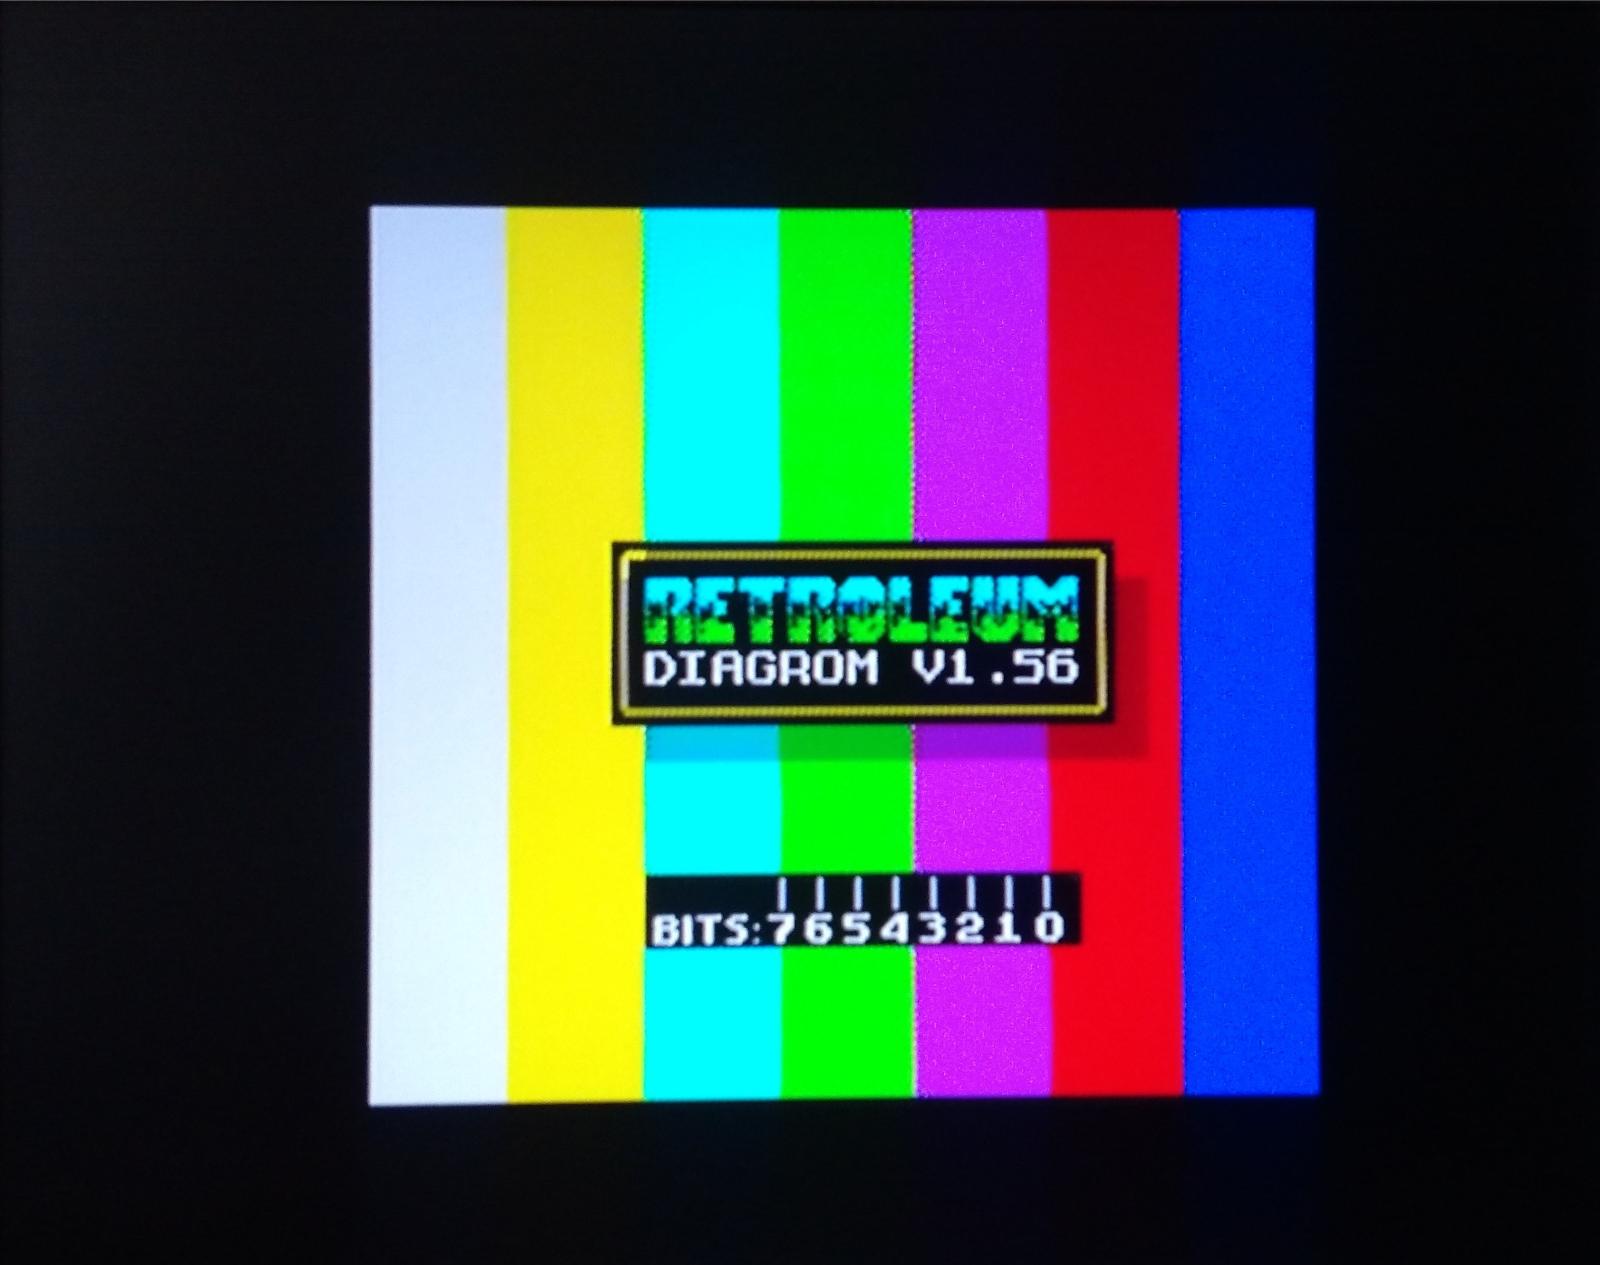 externá diagnostická ROM pre počitače ZX spectrum - Počítače a hry